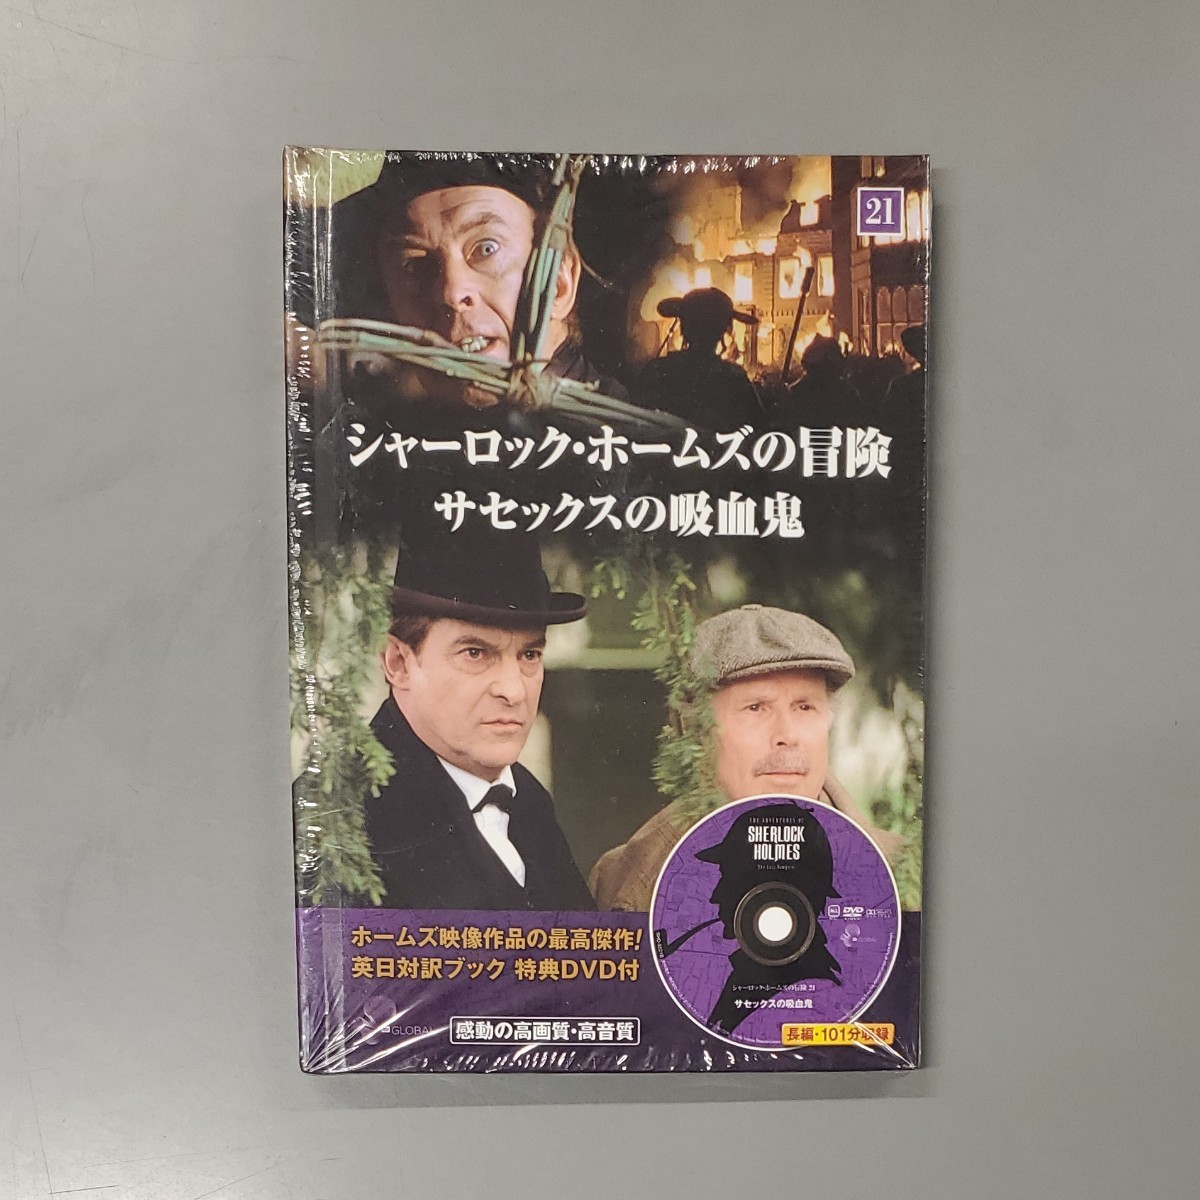 シャーロック・ホームズの冒険 DVD-BOX 1と2のセット-